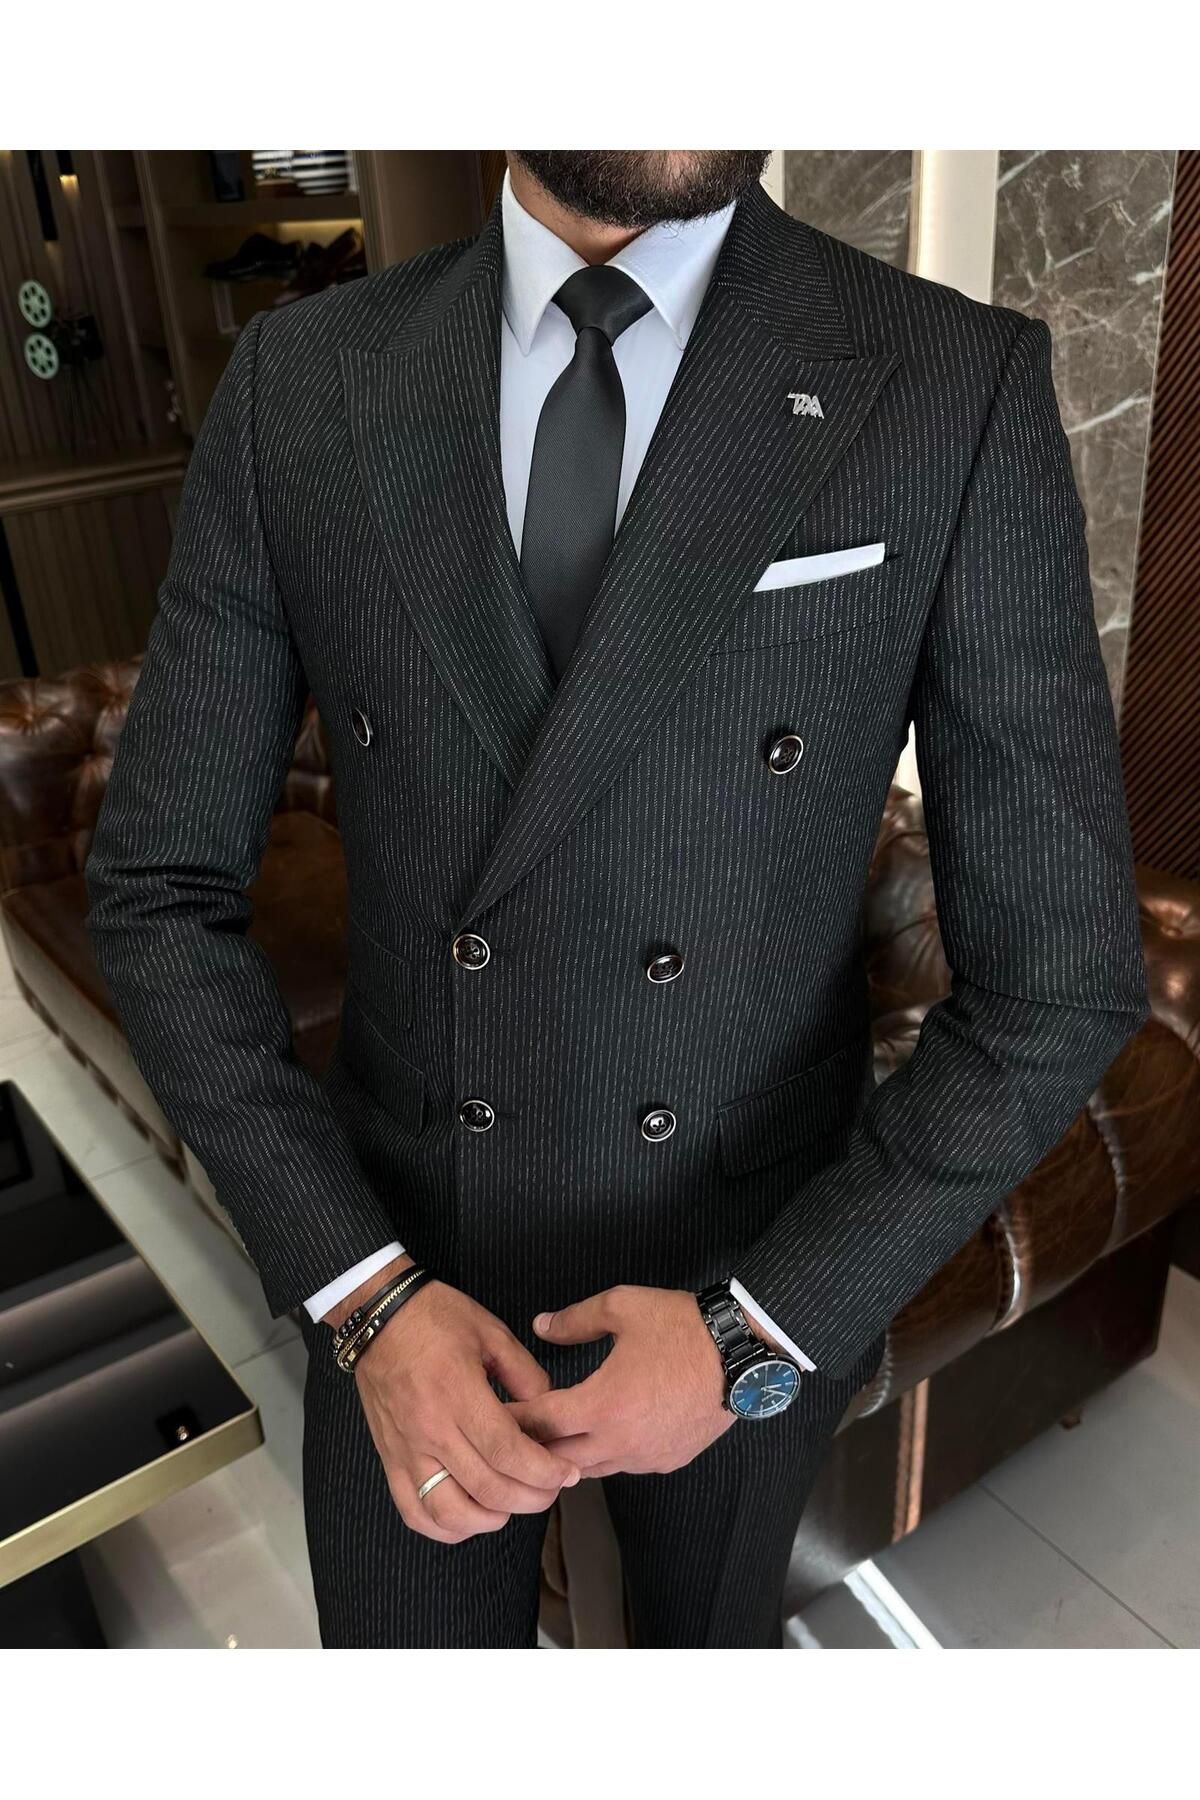 TerziAdemAltun İtalyan stil slim fit çizgili ceket pantolon takım elbise siyah T9946